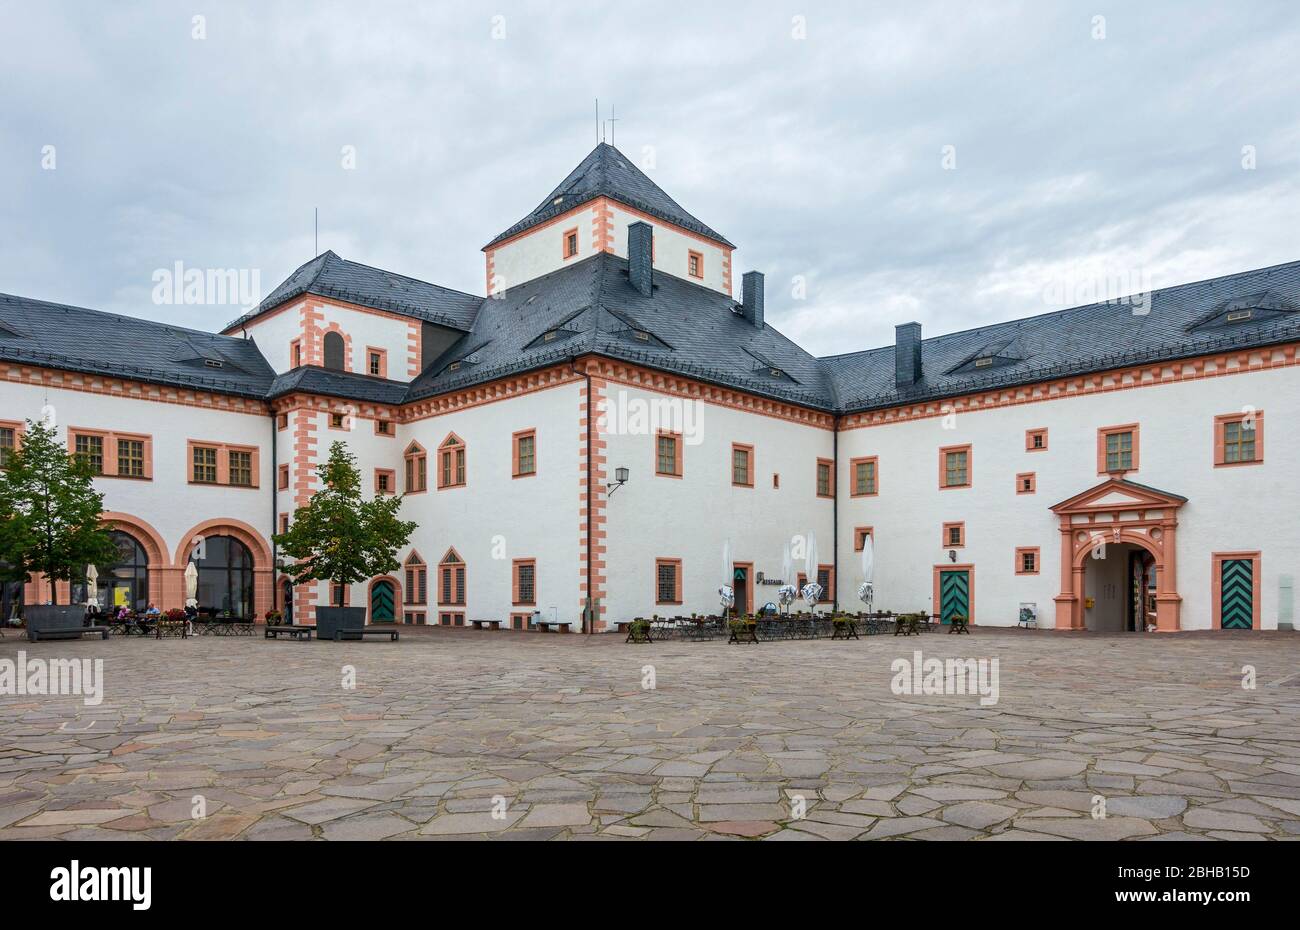 Deutschland, Sachsen, Augustusburg, Schloss Augustusburg, das Schloss beherbergt derzeit eine Jugendherberge, ein Motorradmuseum, ein Kutschenmuseum und ein Museum für Jagd und Ornithologie. Stockfoto